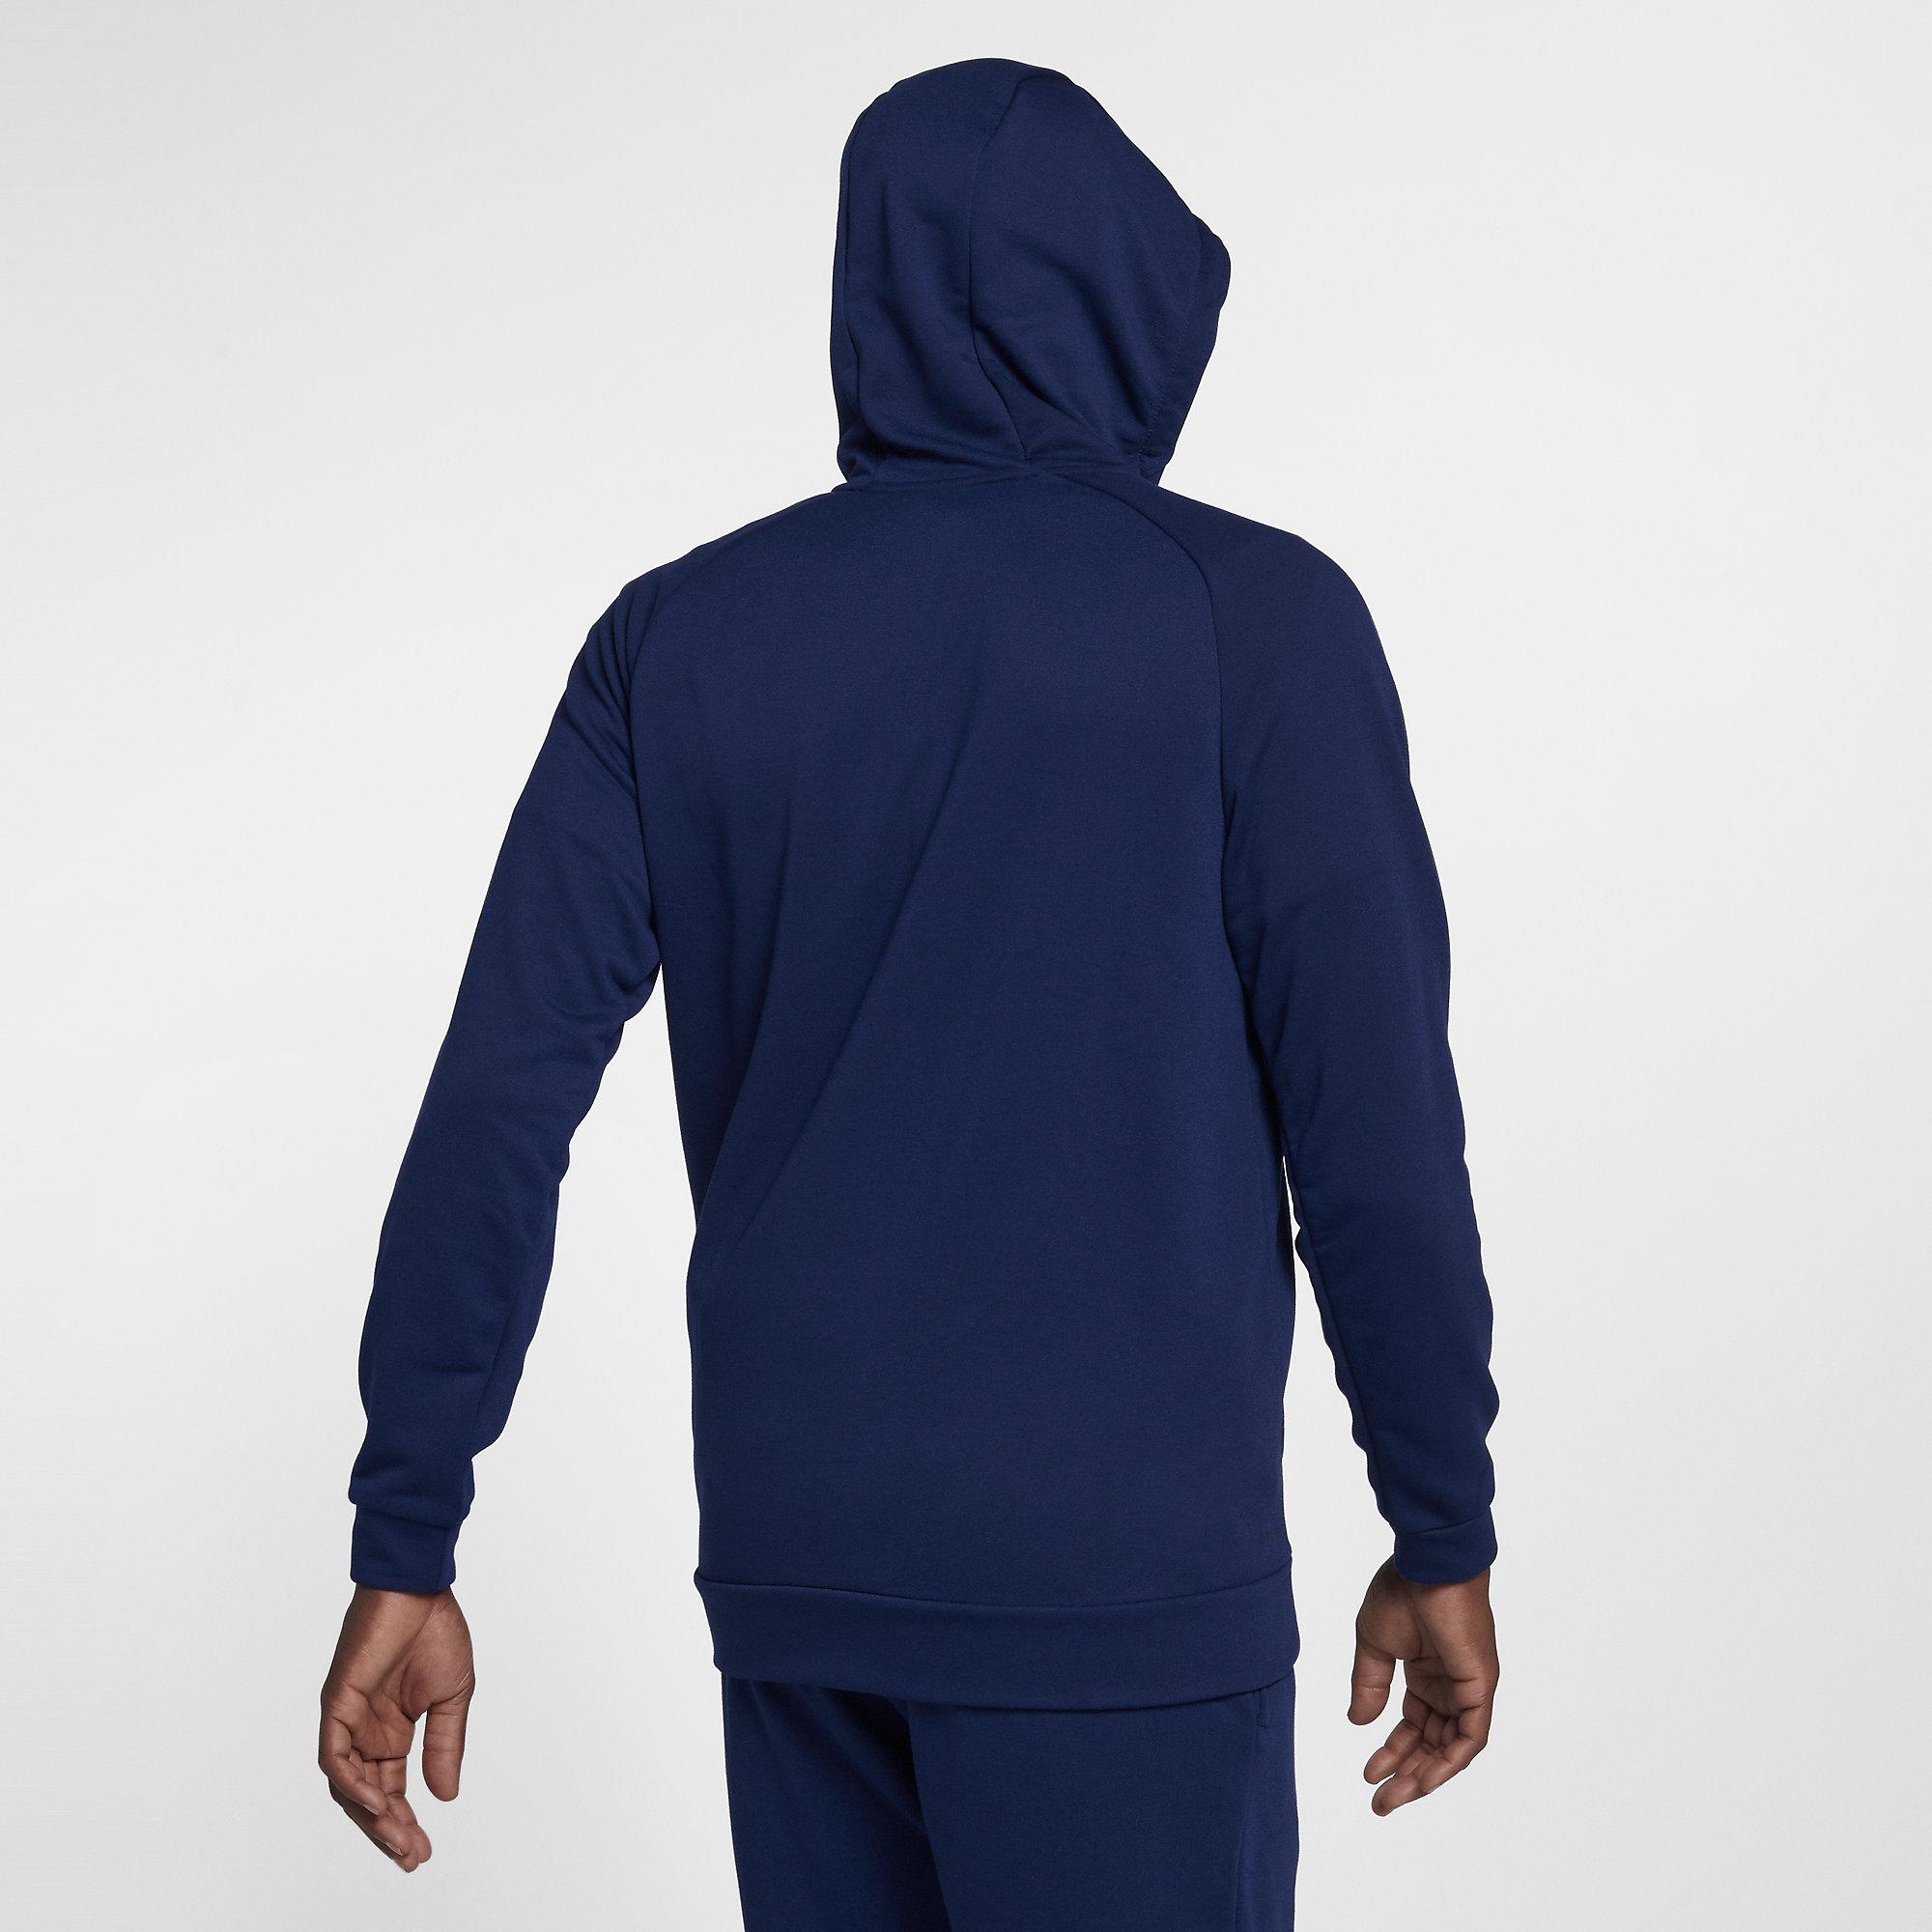 Nike Mens Dry Training Hoodie - Blue Void/Black - Tennisnuts.com